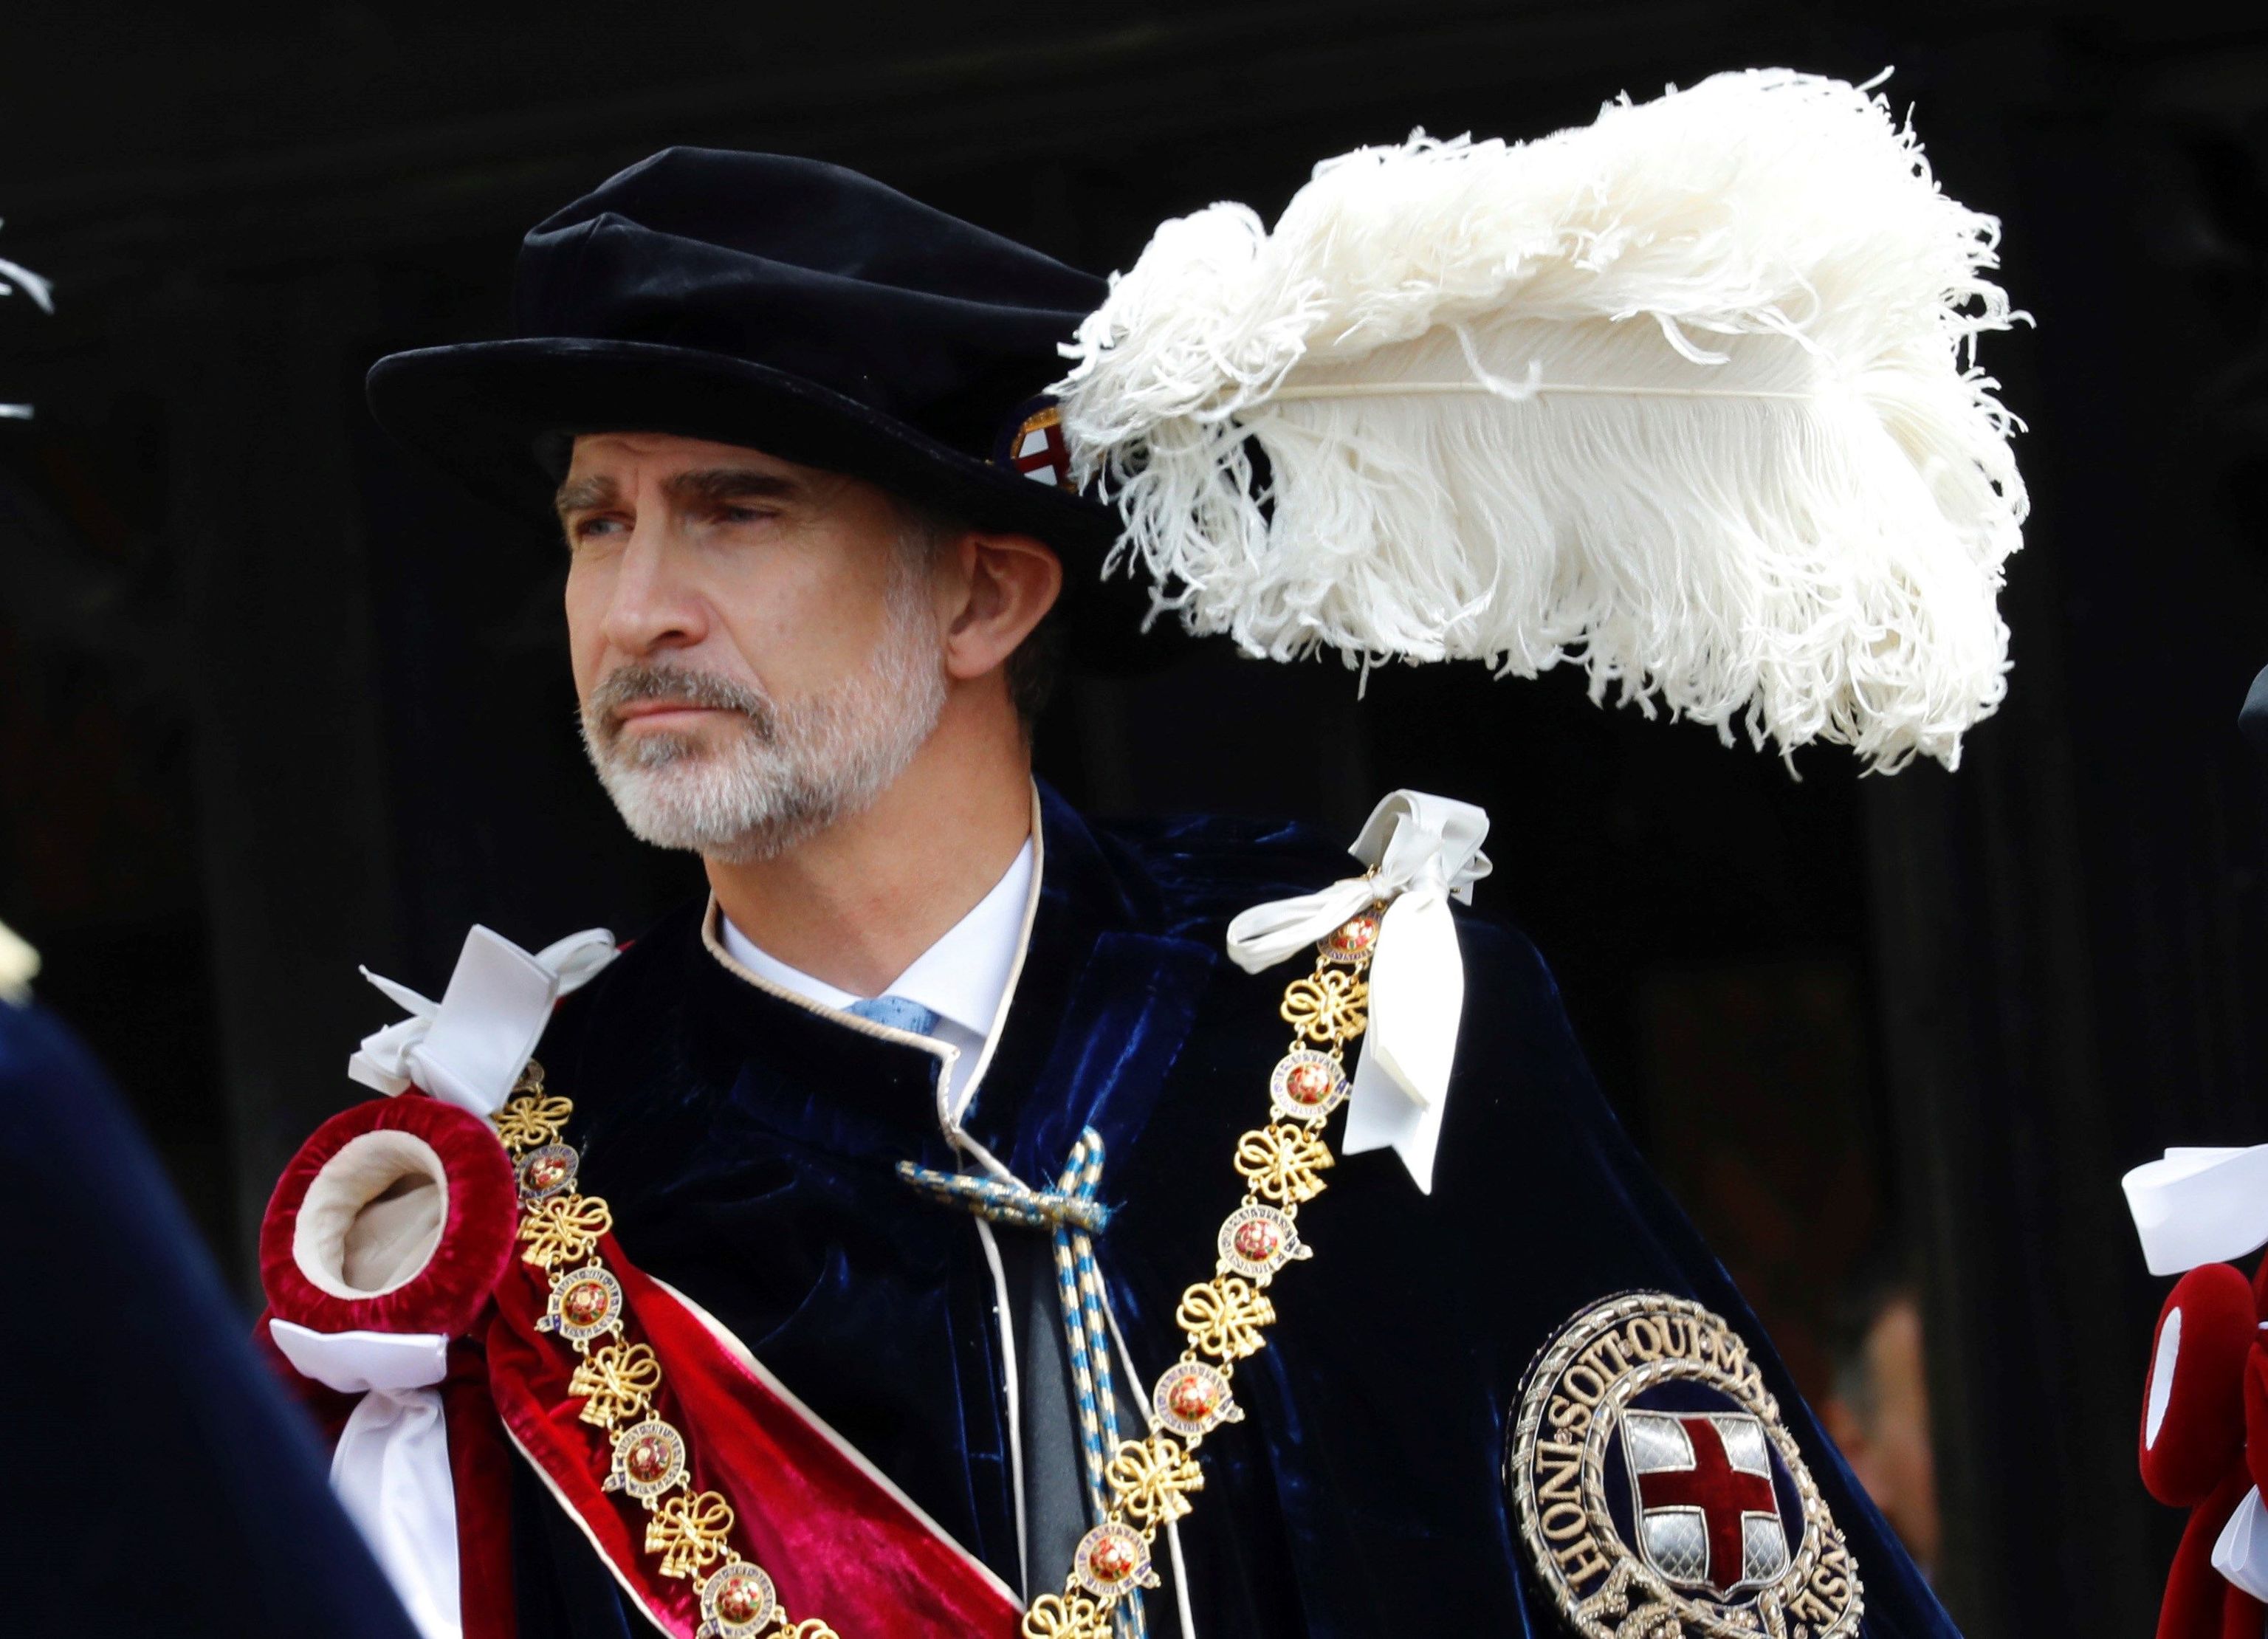 El Rey Felipe con la toga, el sombrero y los atributos que componen el uniforme de caballero de la Orden de la Jarretera